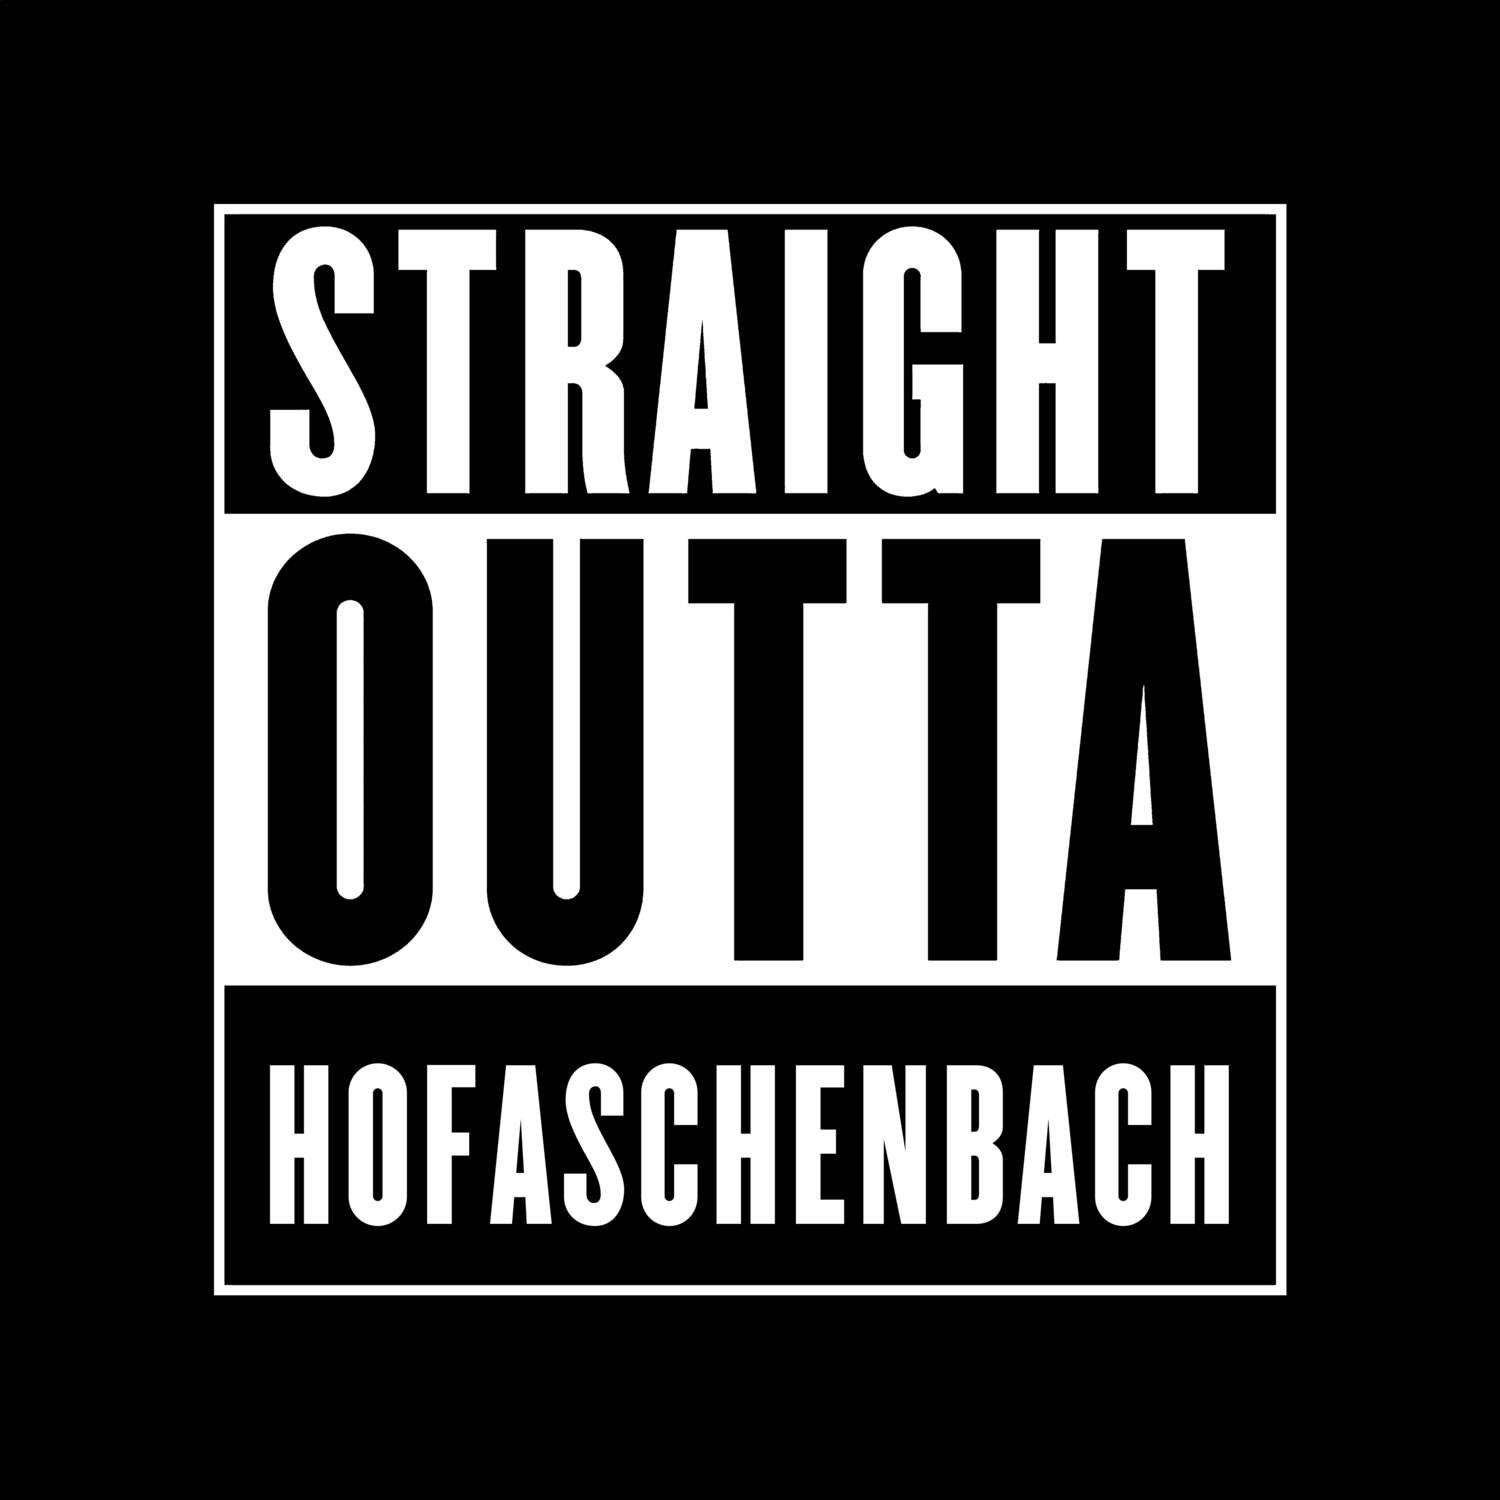 Hofaschenbach T-Shirt »Straight Outta«